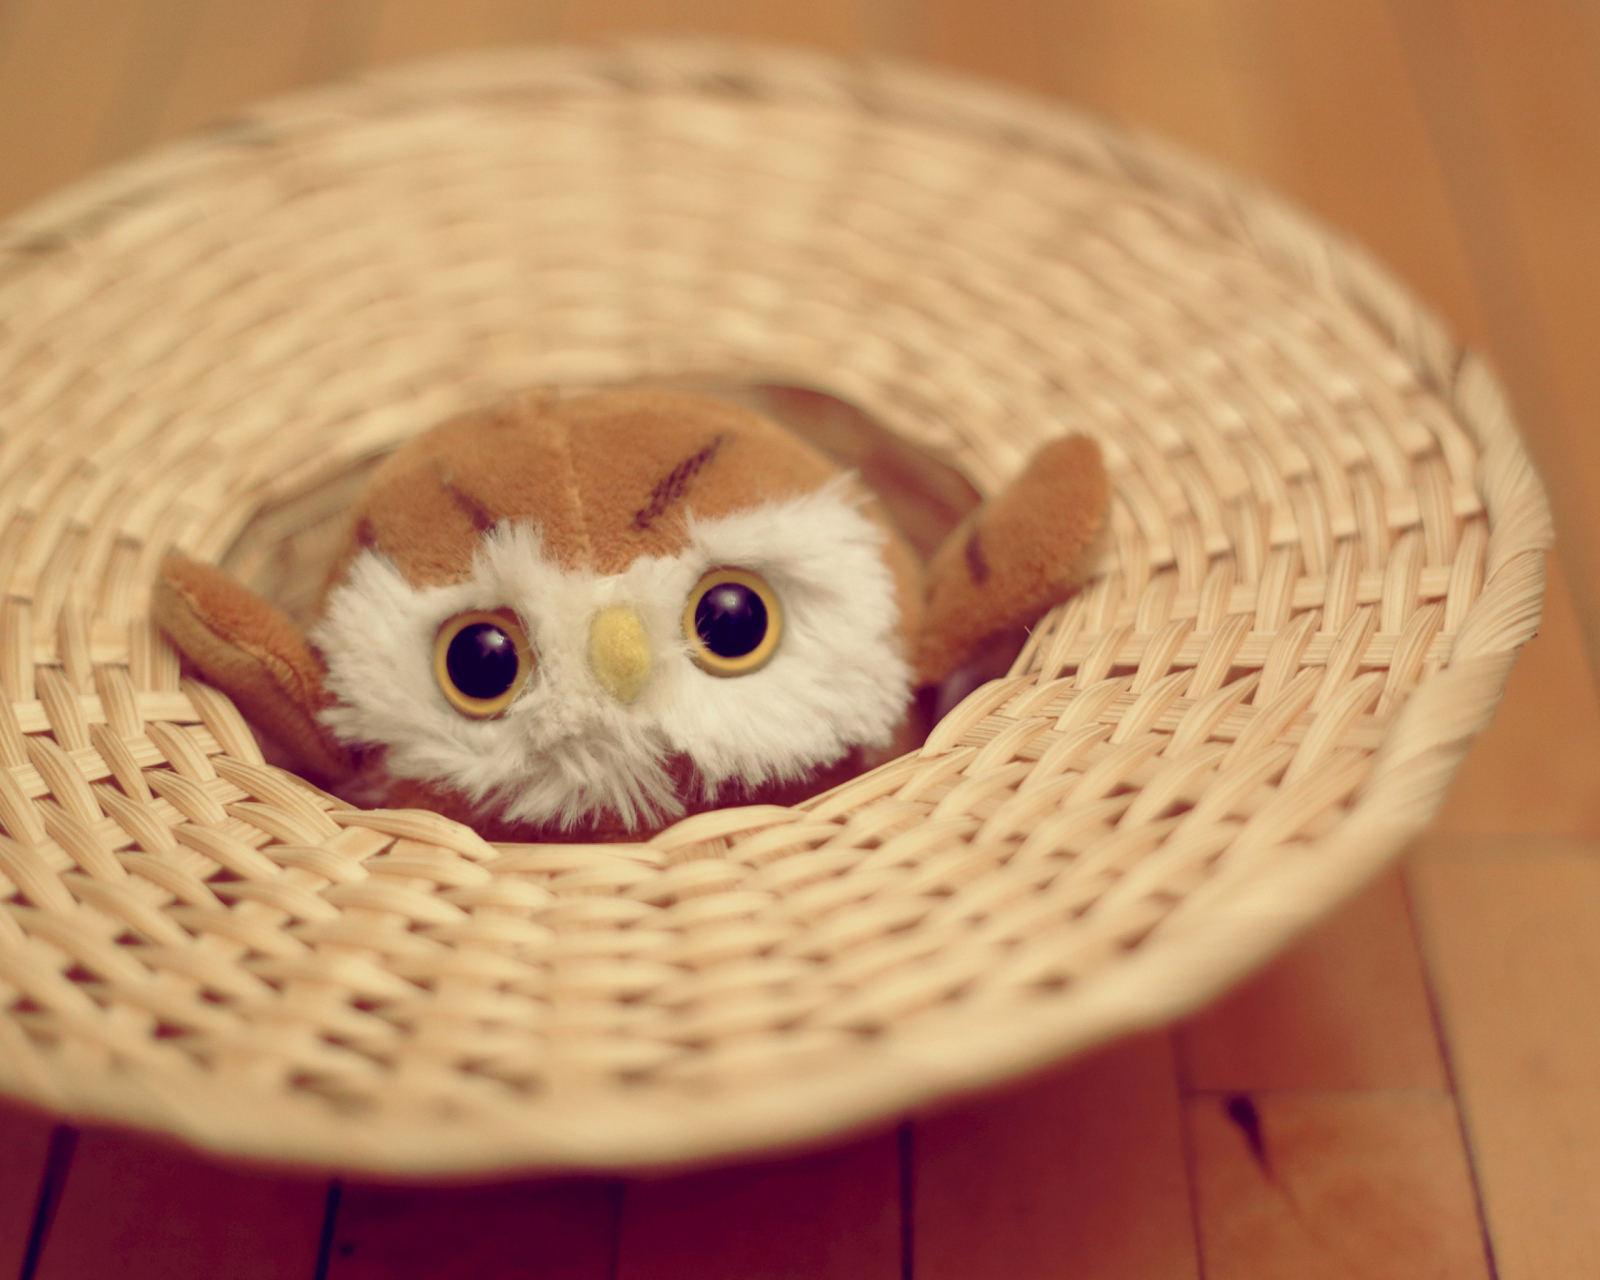 Das Cute Toy Owl Wallpaper 1600x1280